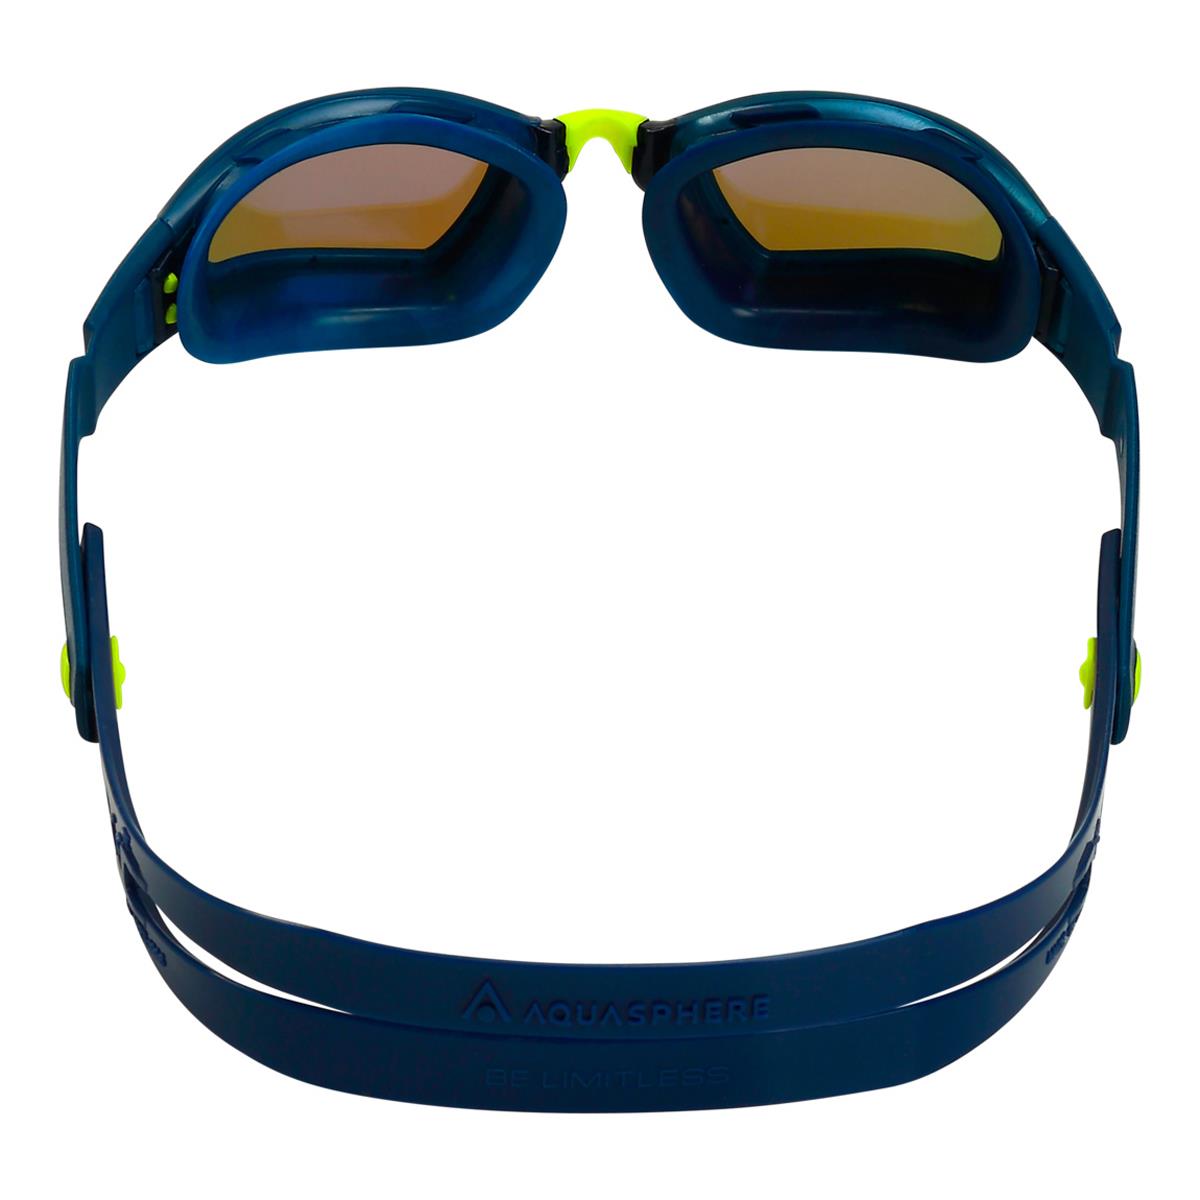 Óculos Espelhados Aqua Sphere Ninja Blue Titanium - Onda Relâmpago